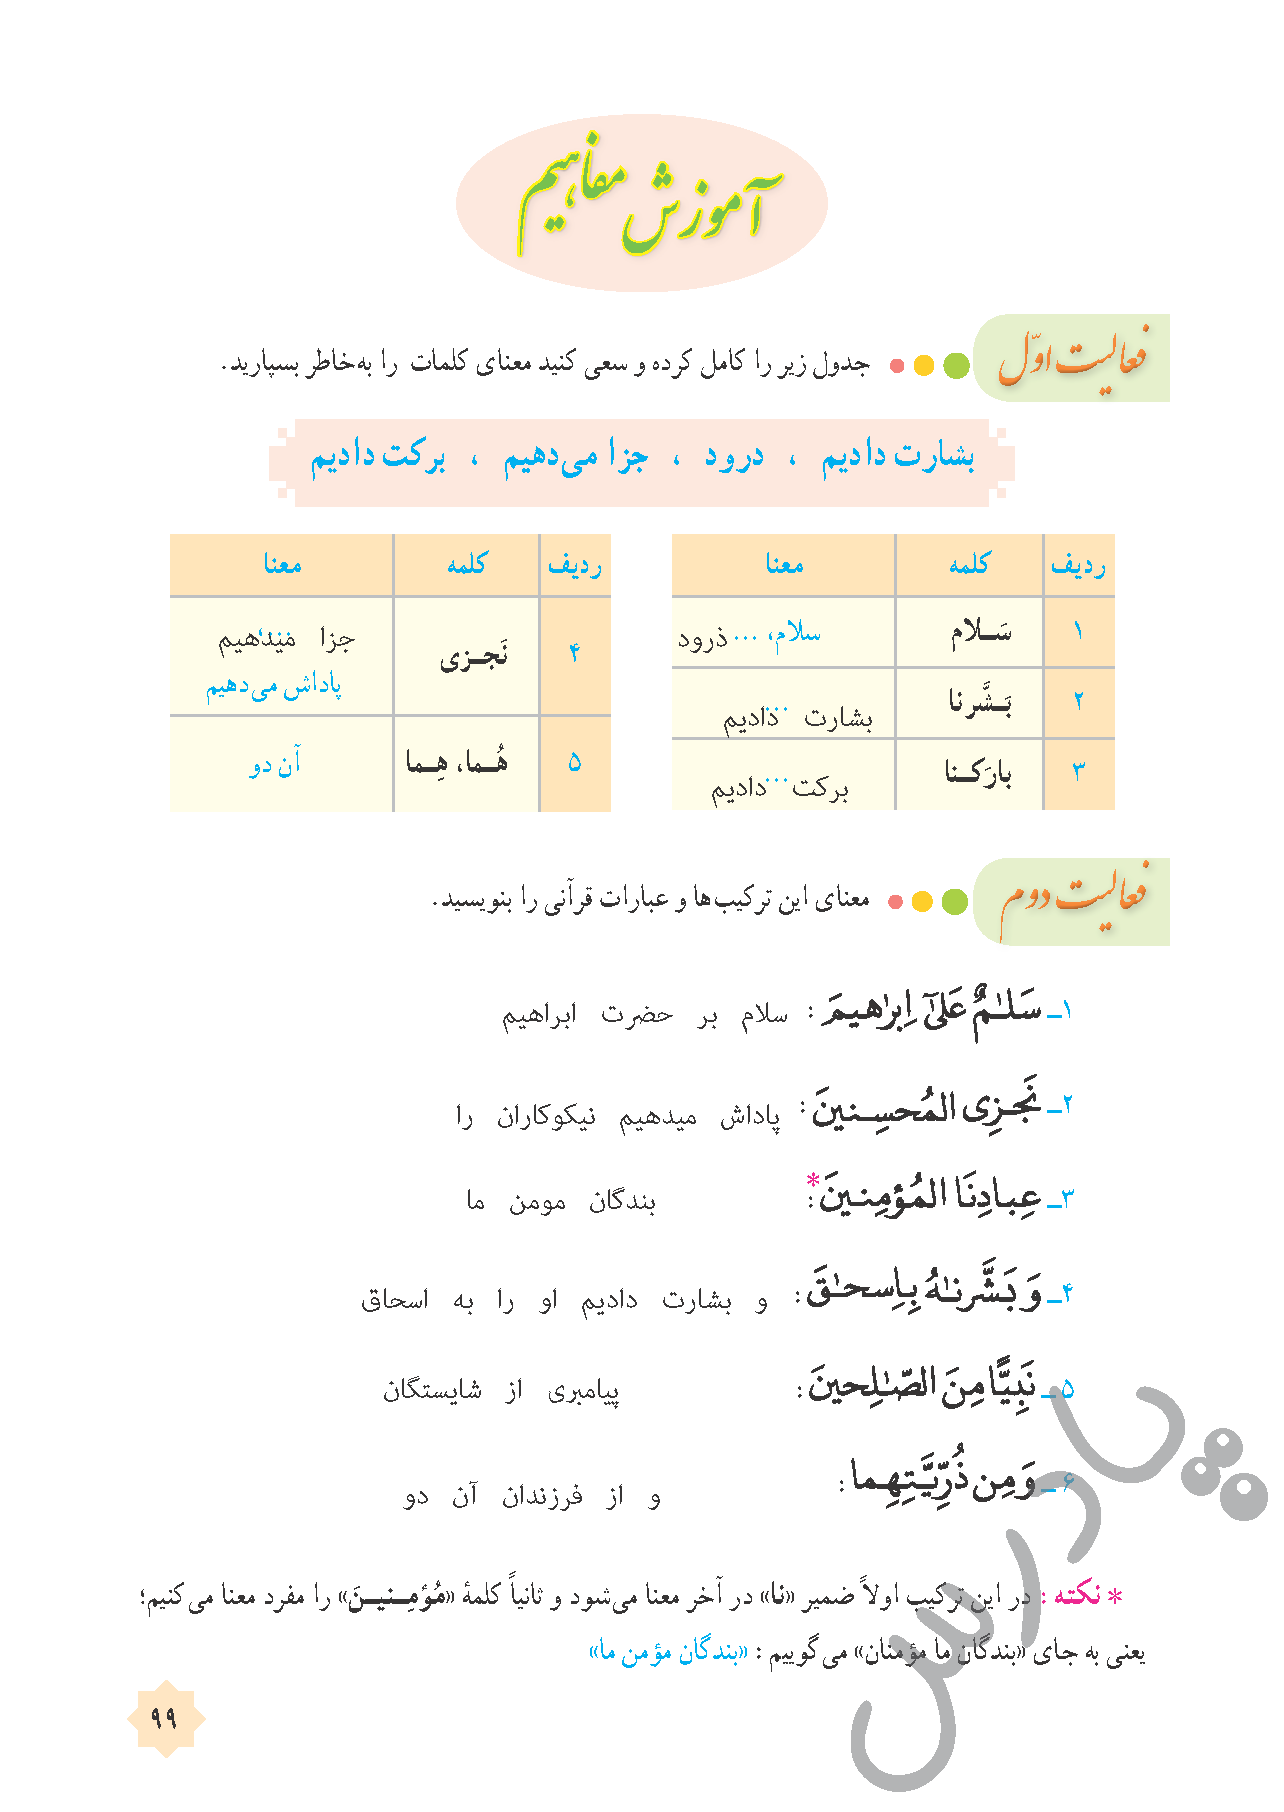 جواب تمرین های قرآن هشتم درس 10 